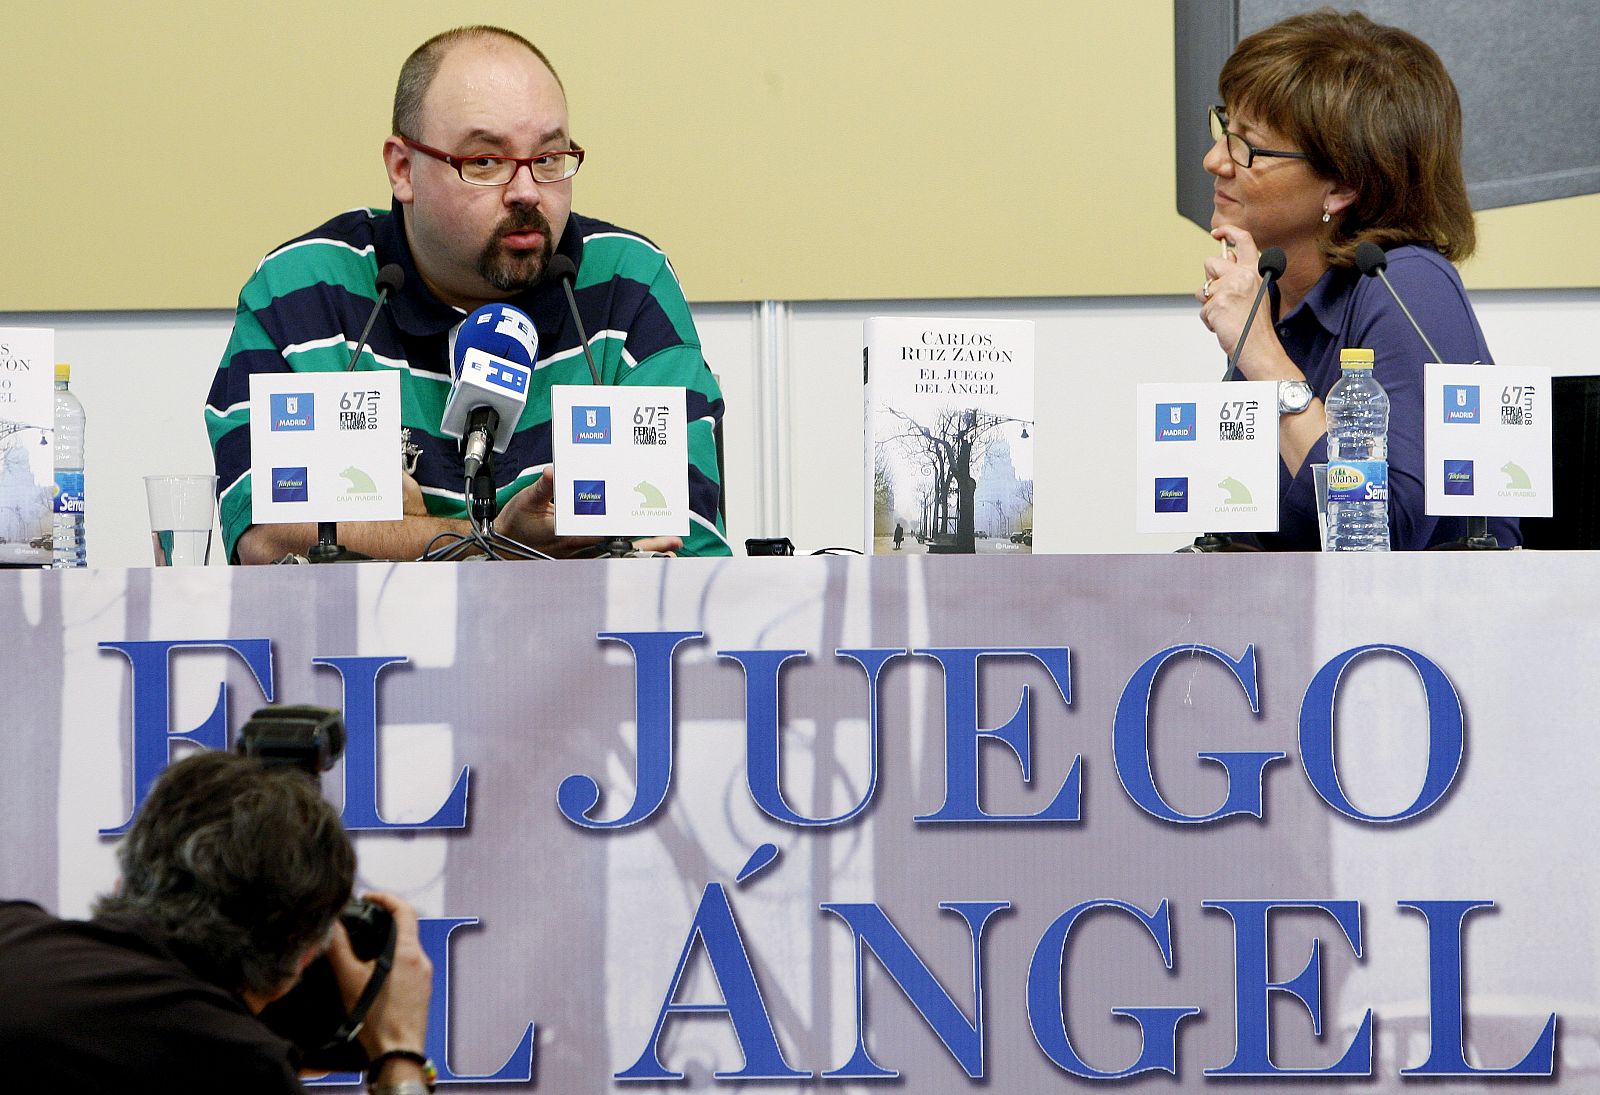 El escritor Carlos Ruiz Zafón, acompañado de la periodista Olga Viza, durante la presentación en la Feria del Libro de Madrid de su última novela, "El juego del ángel".